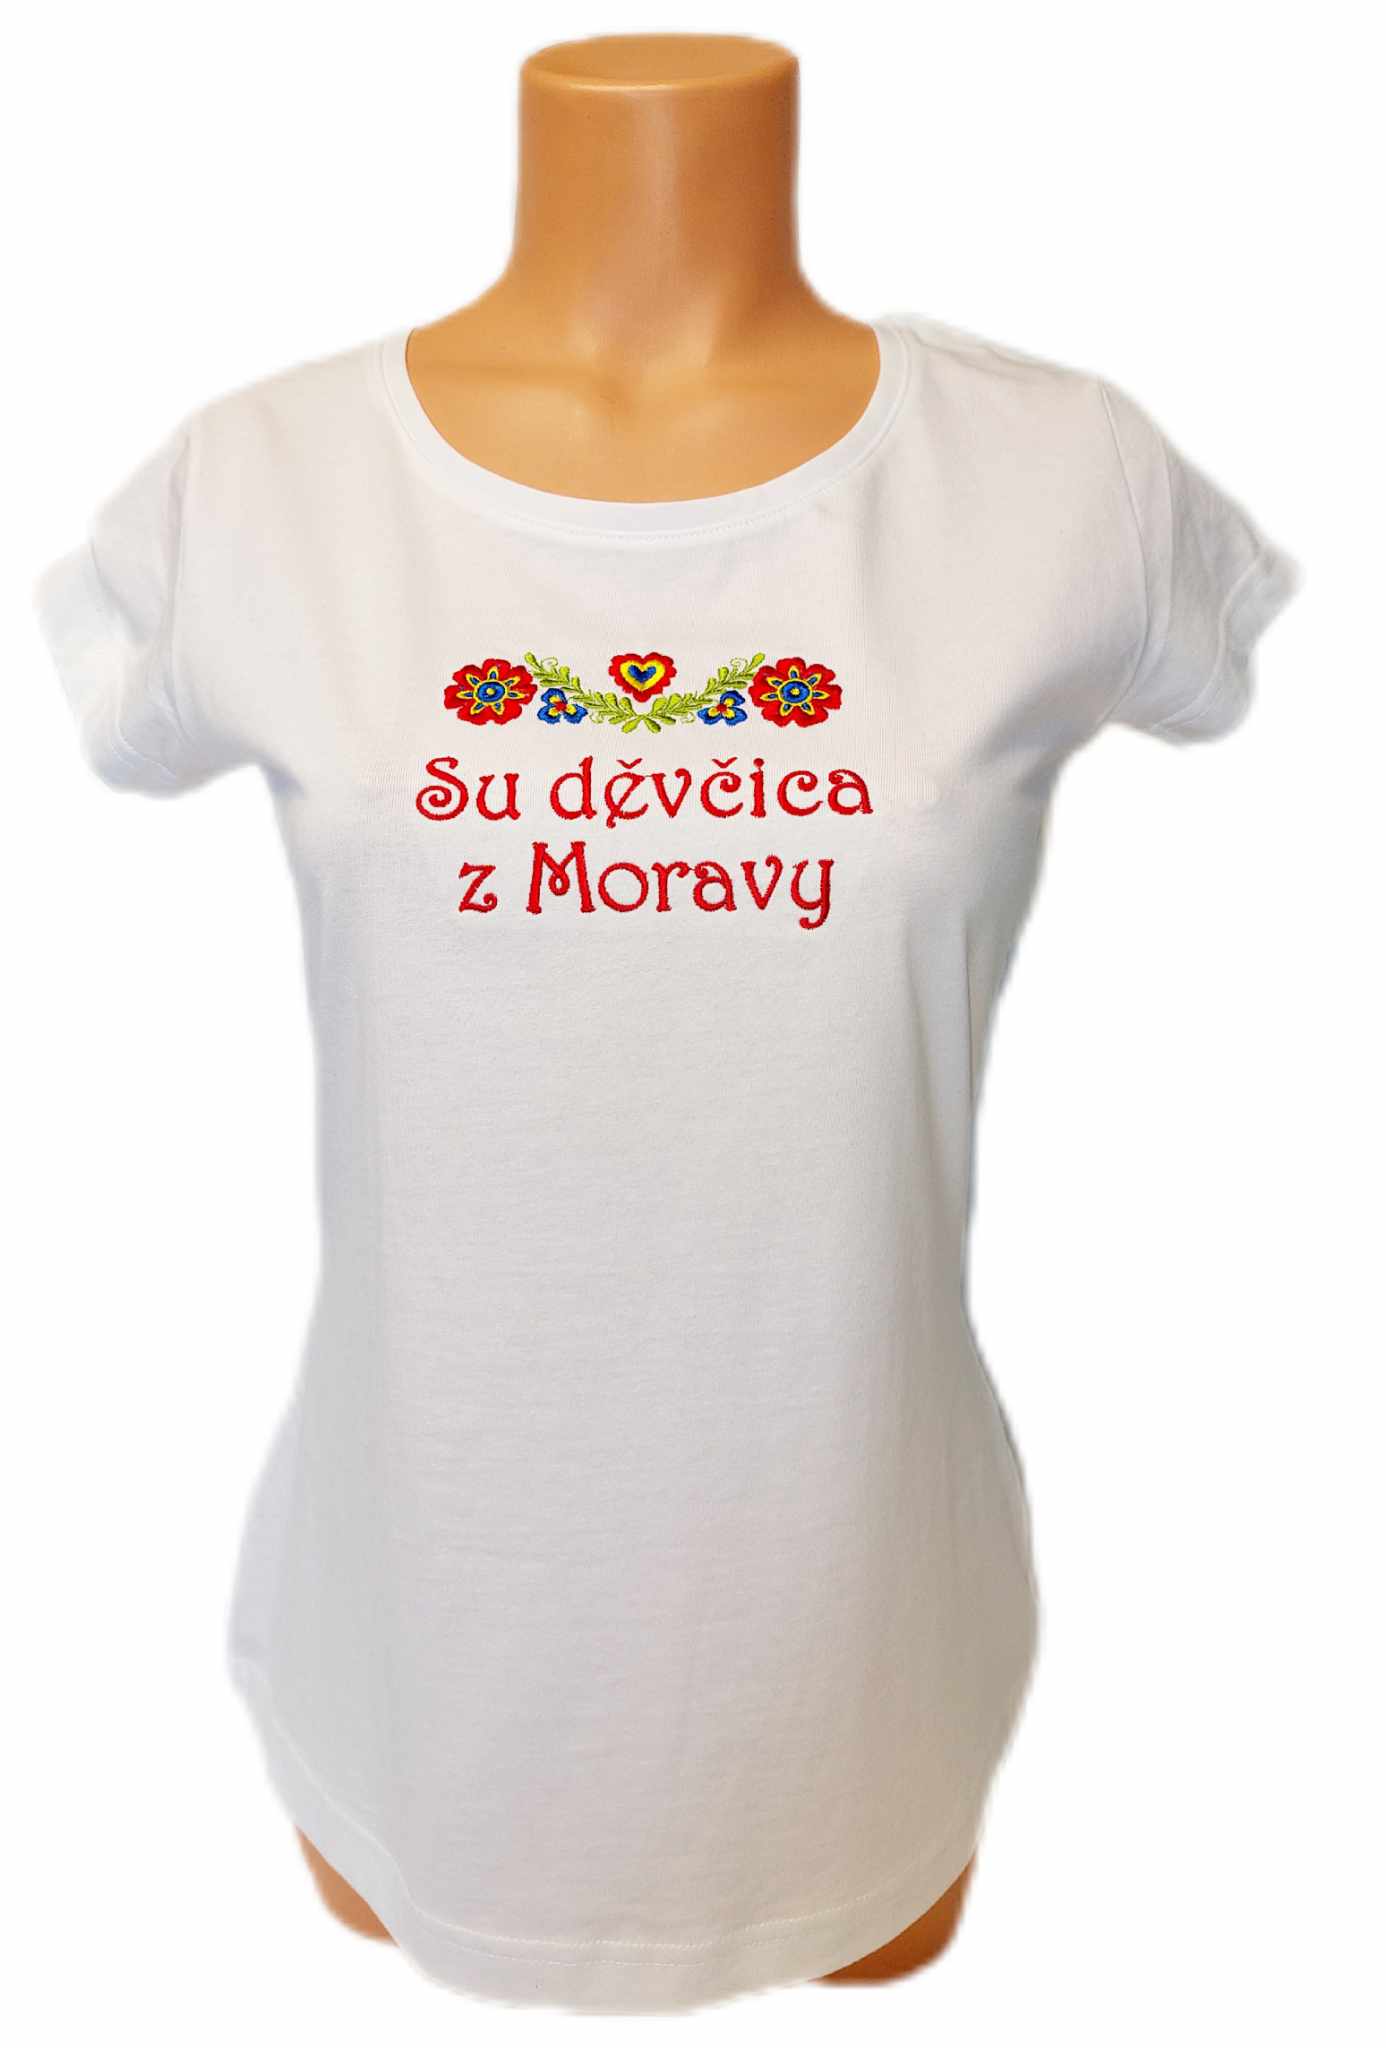 Dámské trièko s výšivkou Dìvèica z Moravy bílé - zvìtšit obrázek